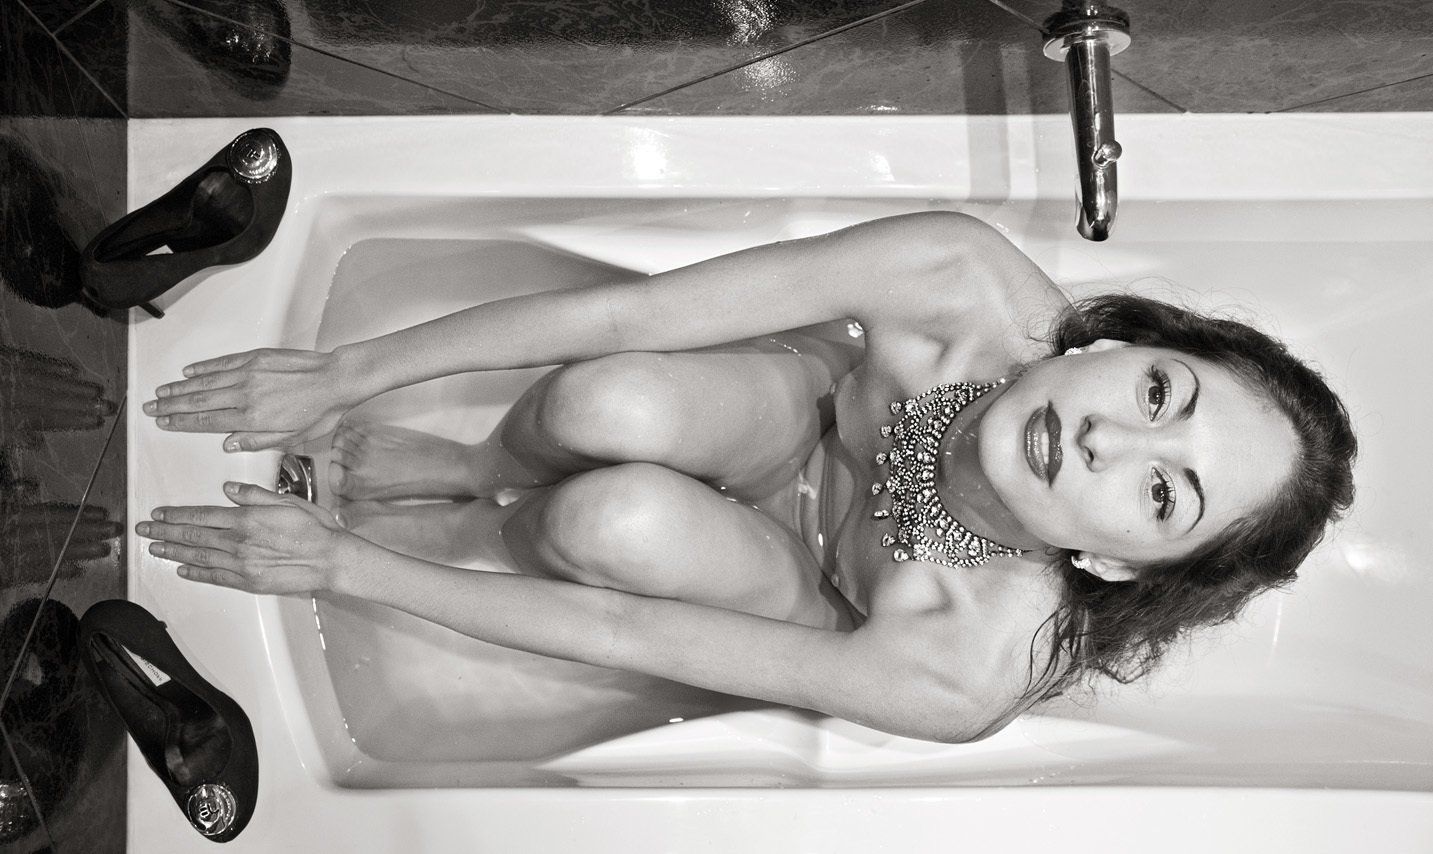 Thierry Aguiar : photo noir et blanc prise de dessus de Juliana, nue dans une baignoire, un collier autour du cou, prête pour un départ de dos crawlé.